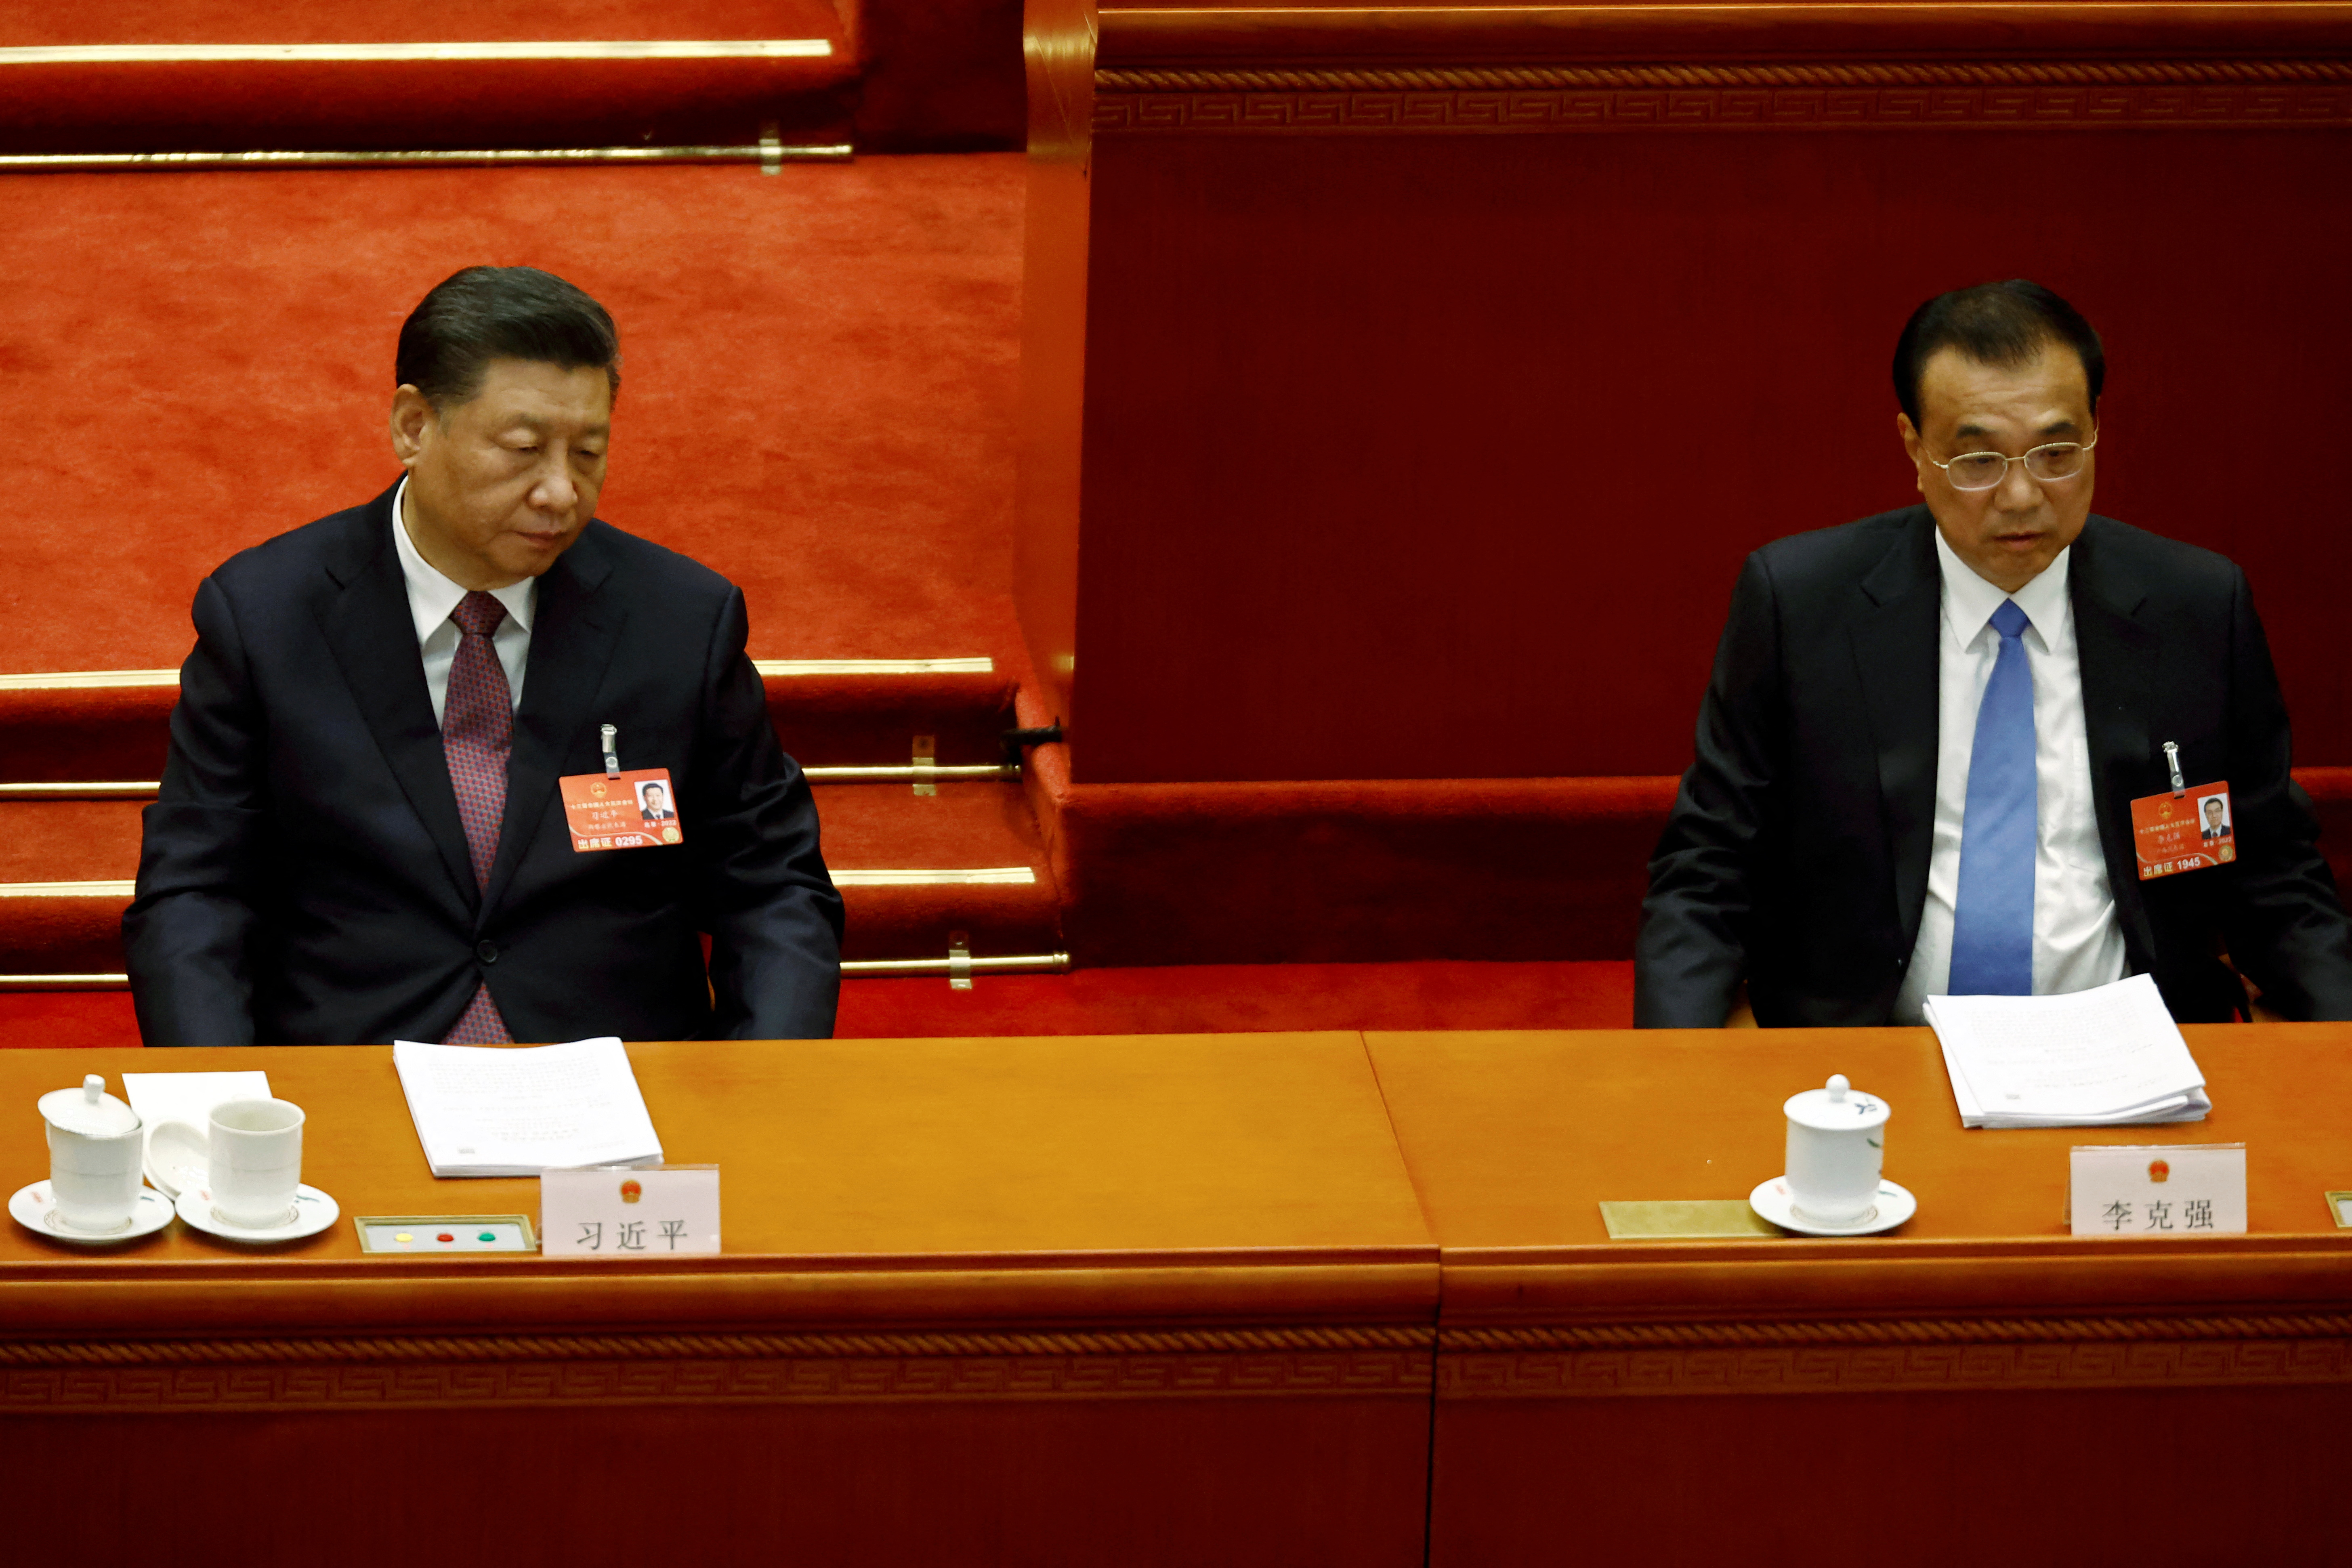 ¿Crisis en la cúpula china?: las diferencias entre Xi Jinping y Li Keqiang paraliza a los funcionarios económicos del régimen